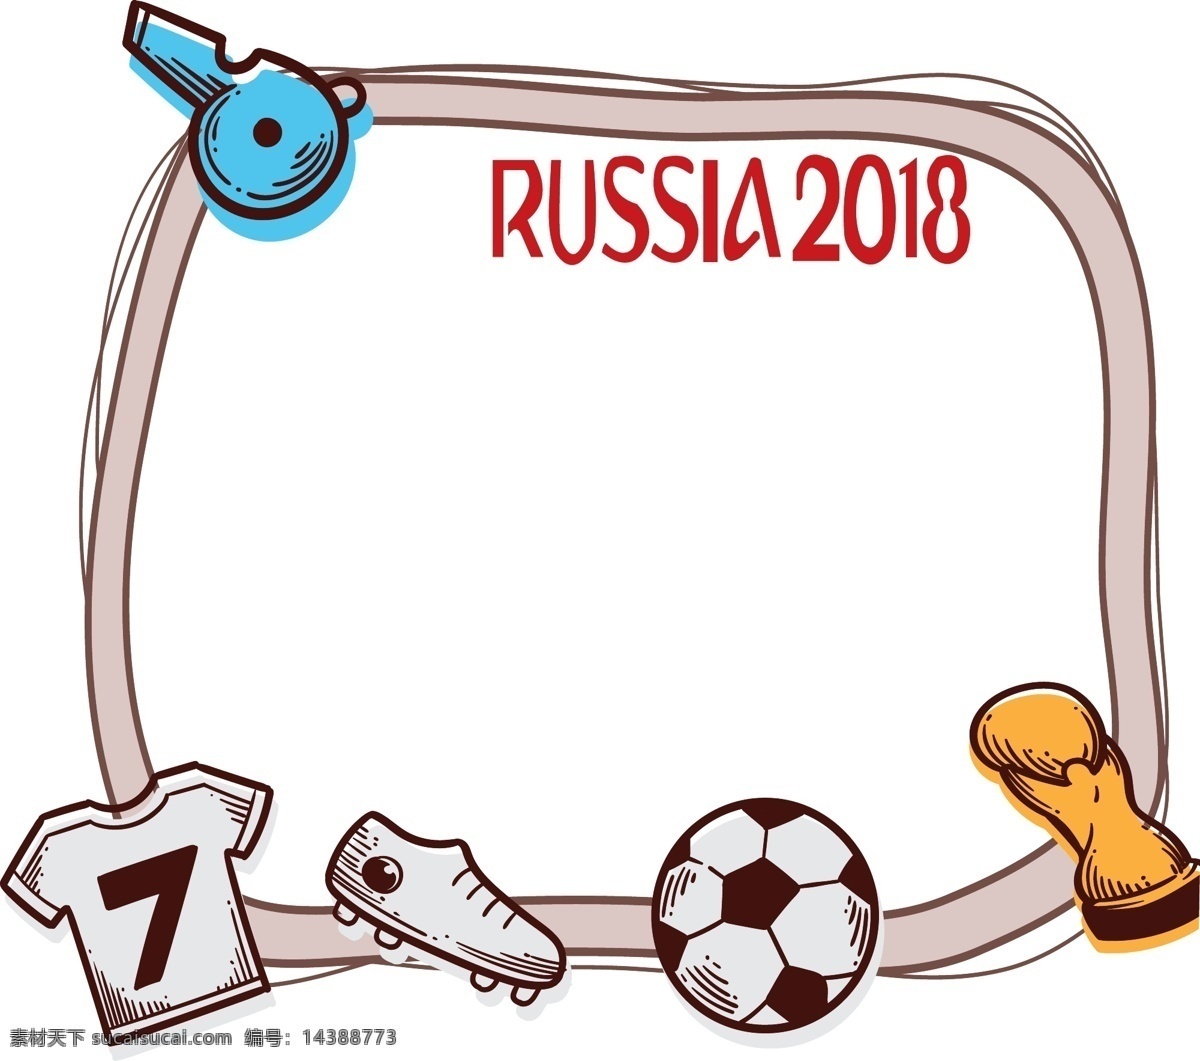 2018 俄罗斯 世界杯 边框 足球 比赛 用品 云朵边框 足球鞋 守门员手套 定时器 清新边框 世界杯边框